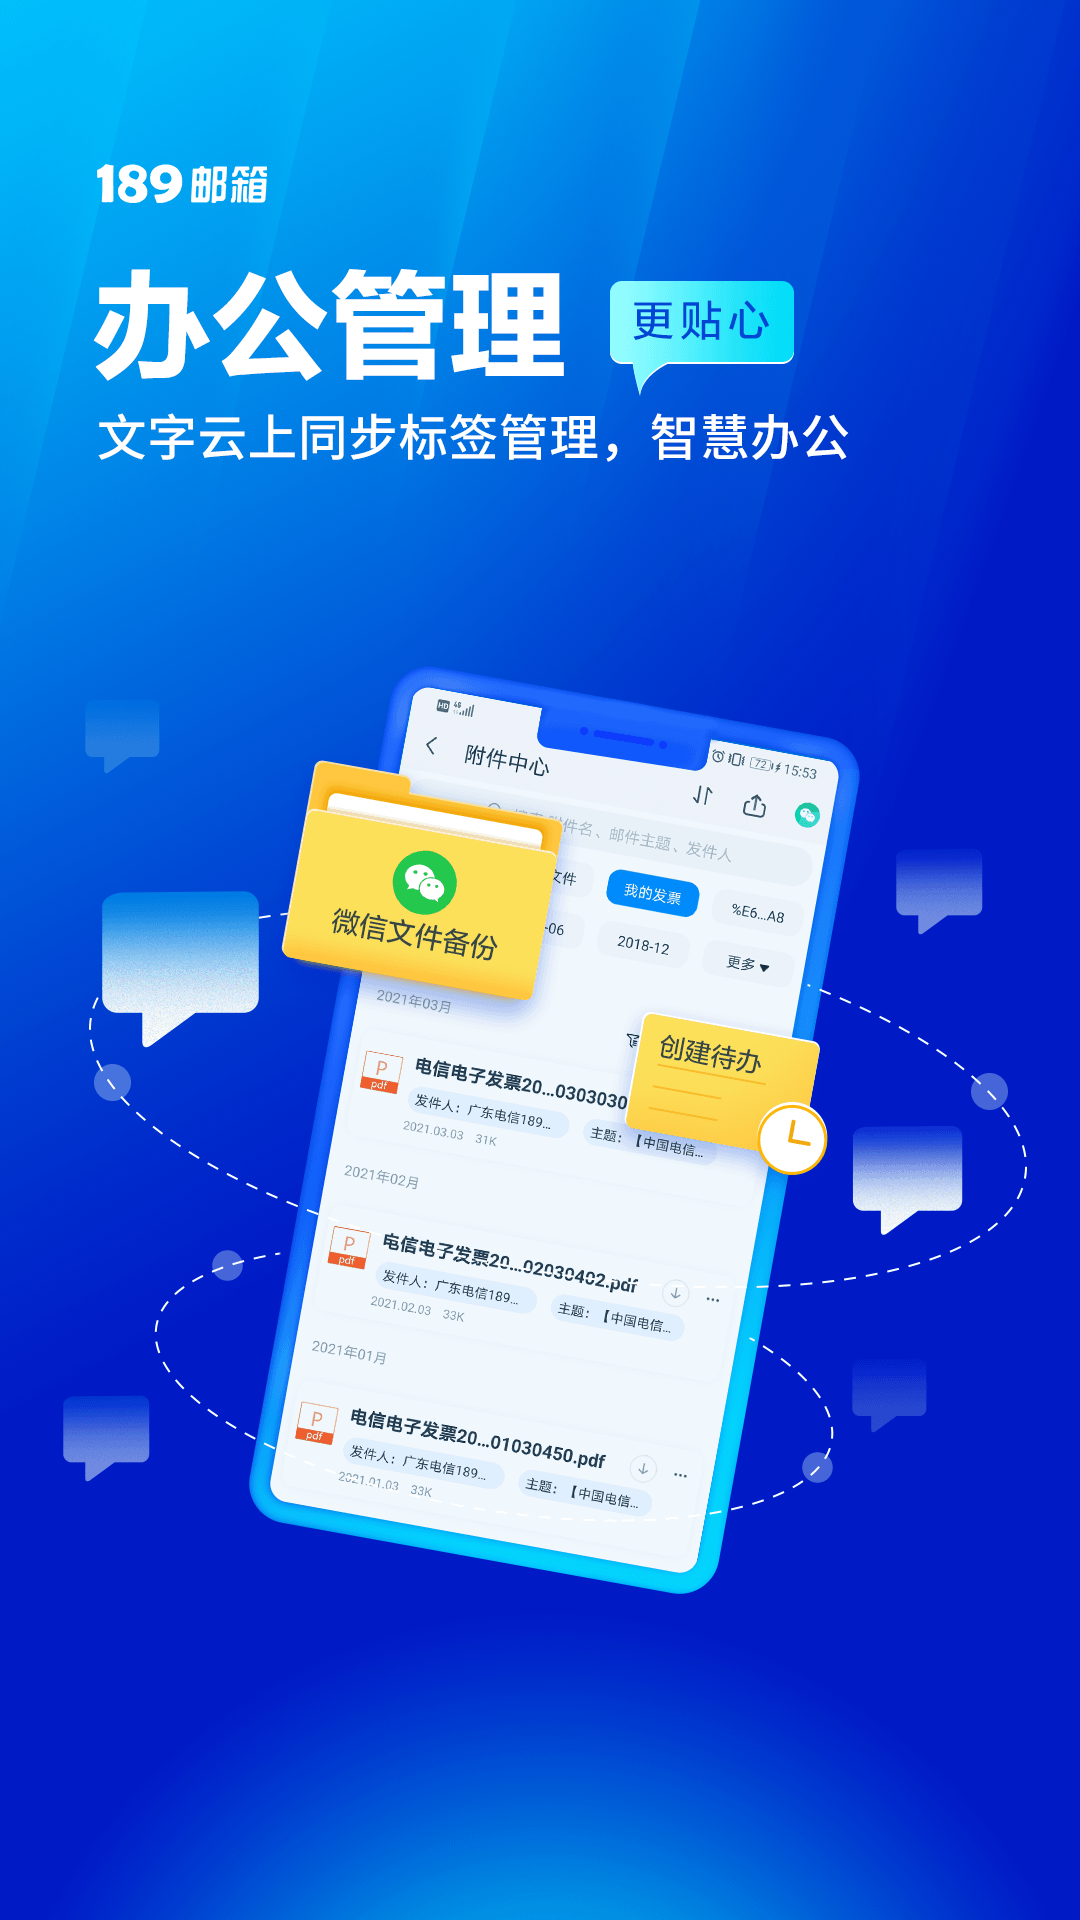 89邮箱上海怎么样开发app"